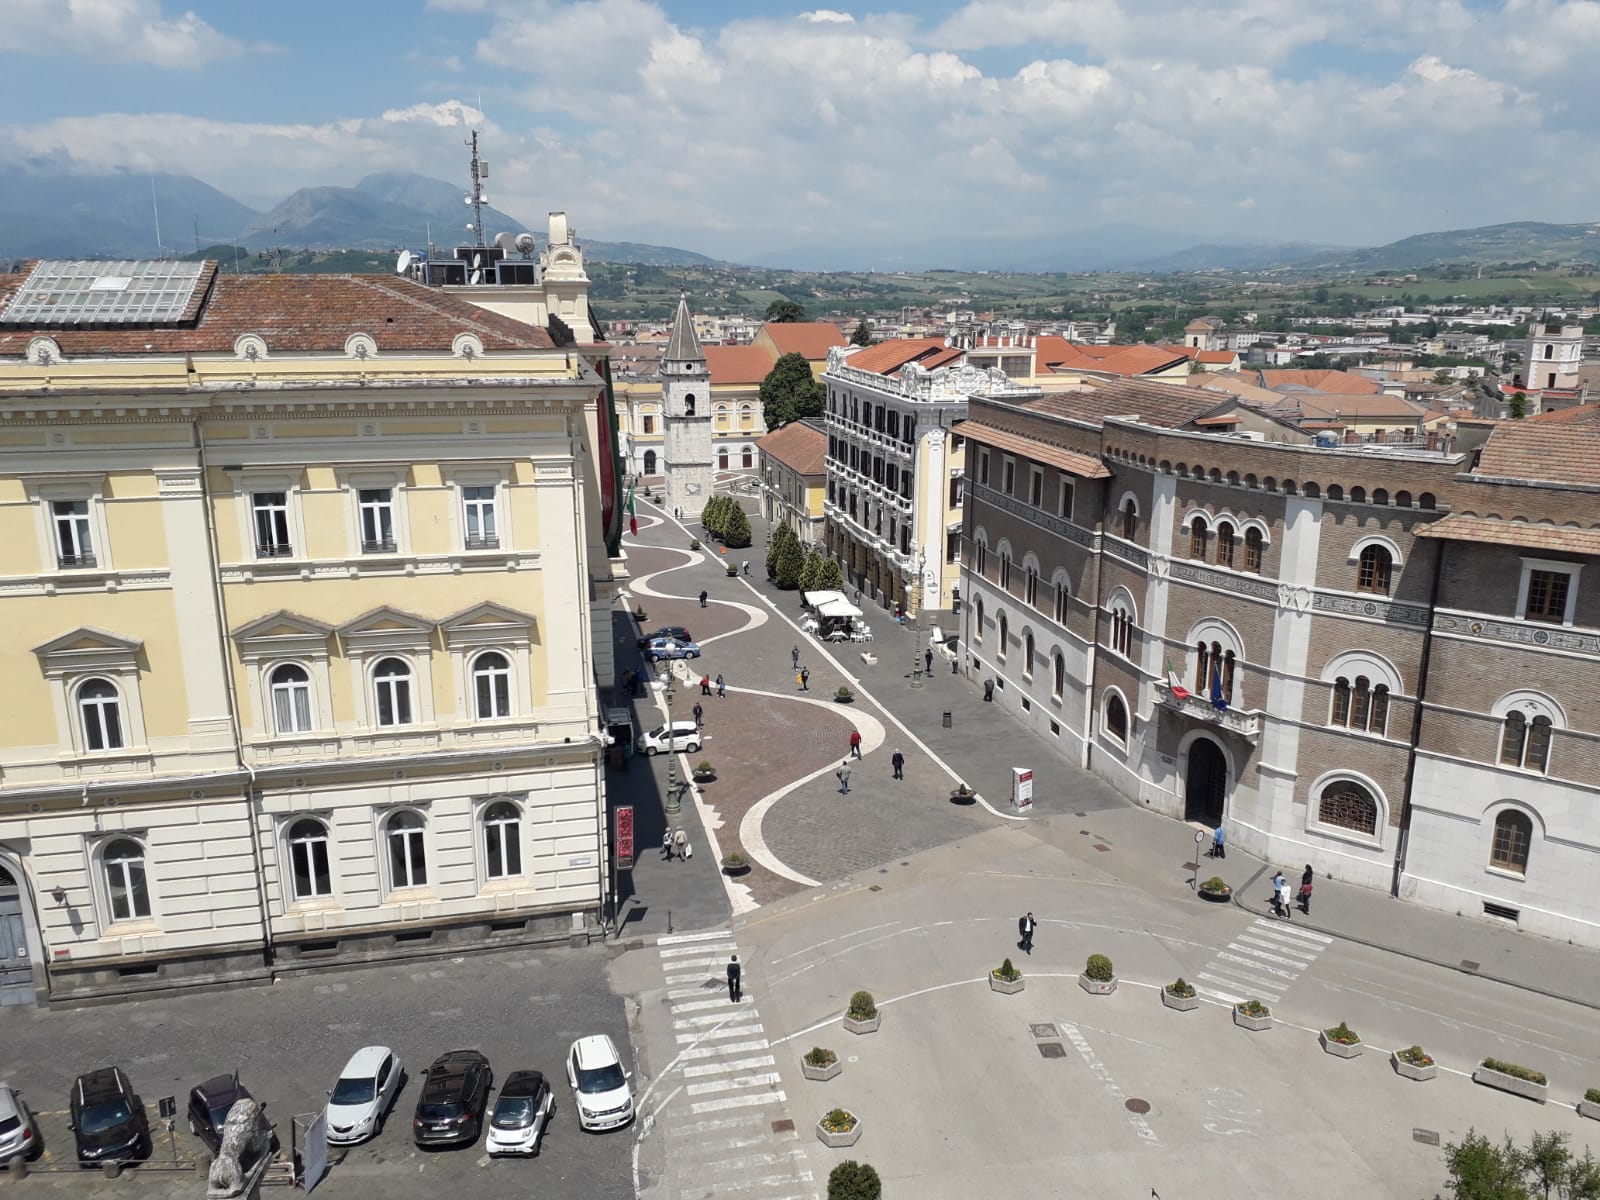 “Benevento Città Spettacolo”, i dubbi del  Comitato “Centro Storico”: lettera al sindaco e prefetto